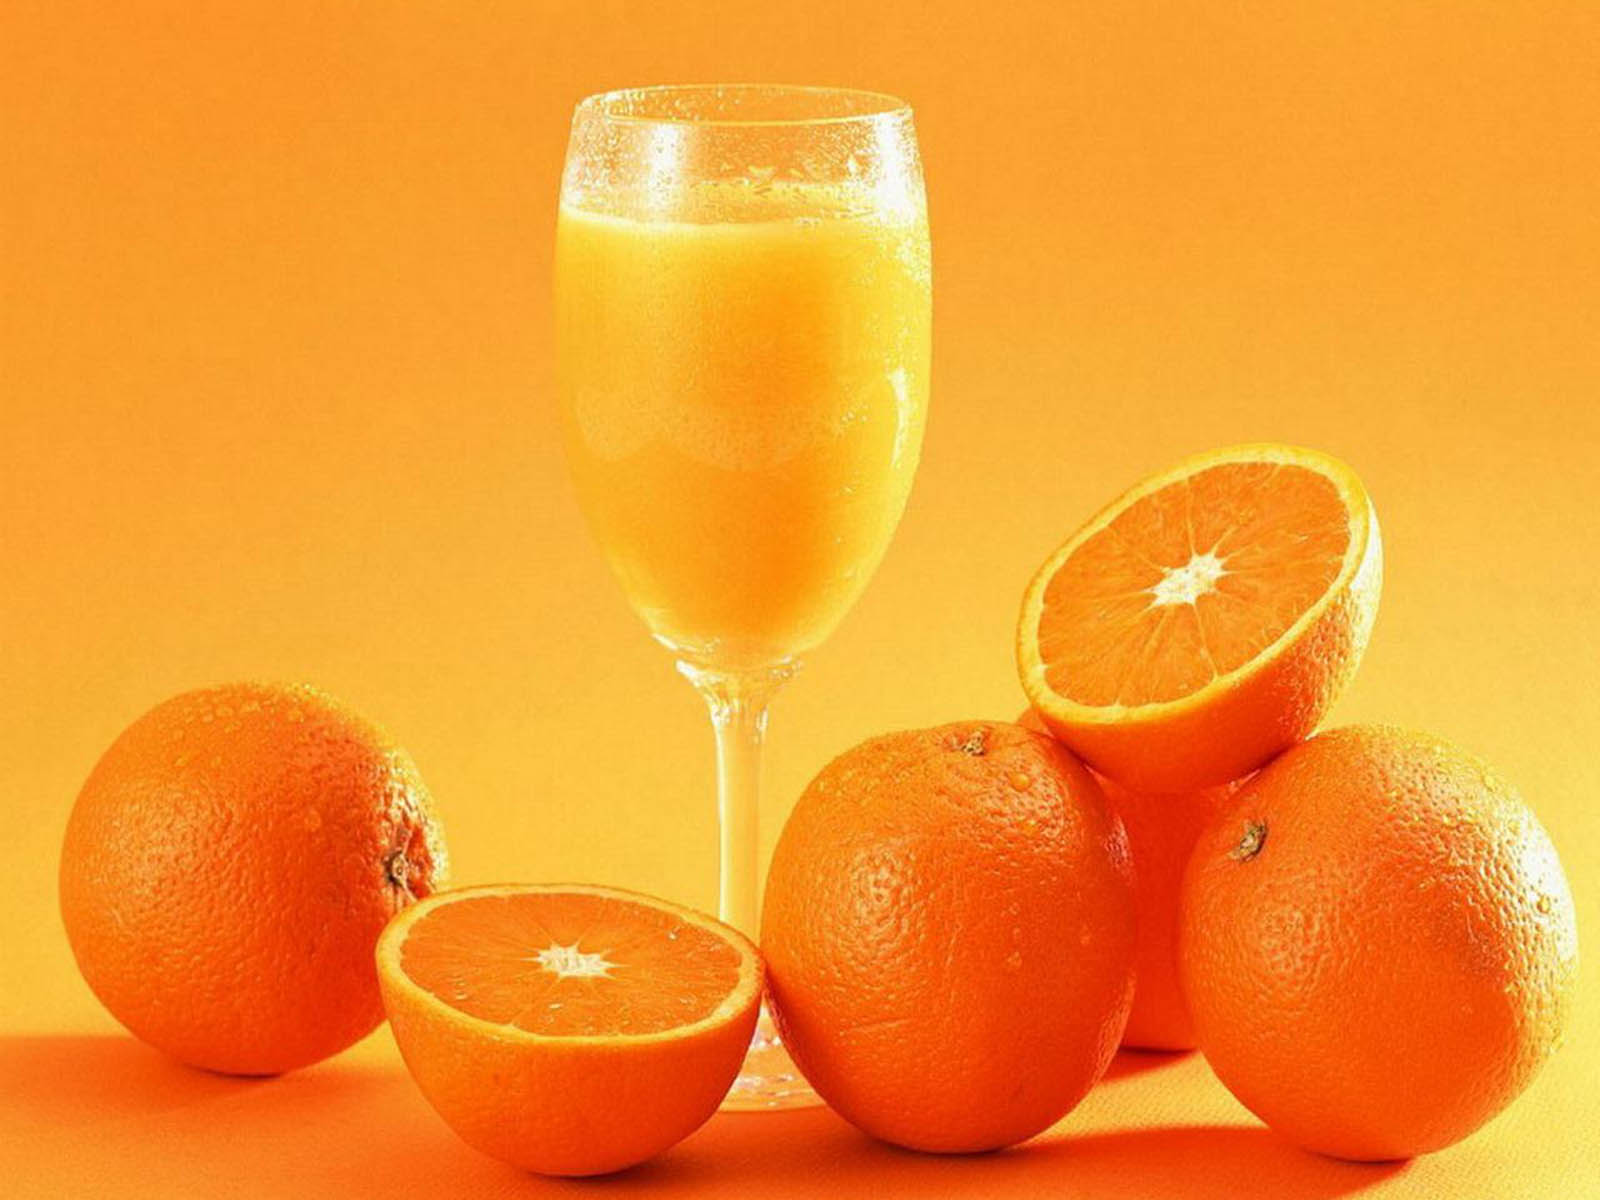 Orange Fruit Pictures